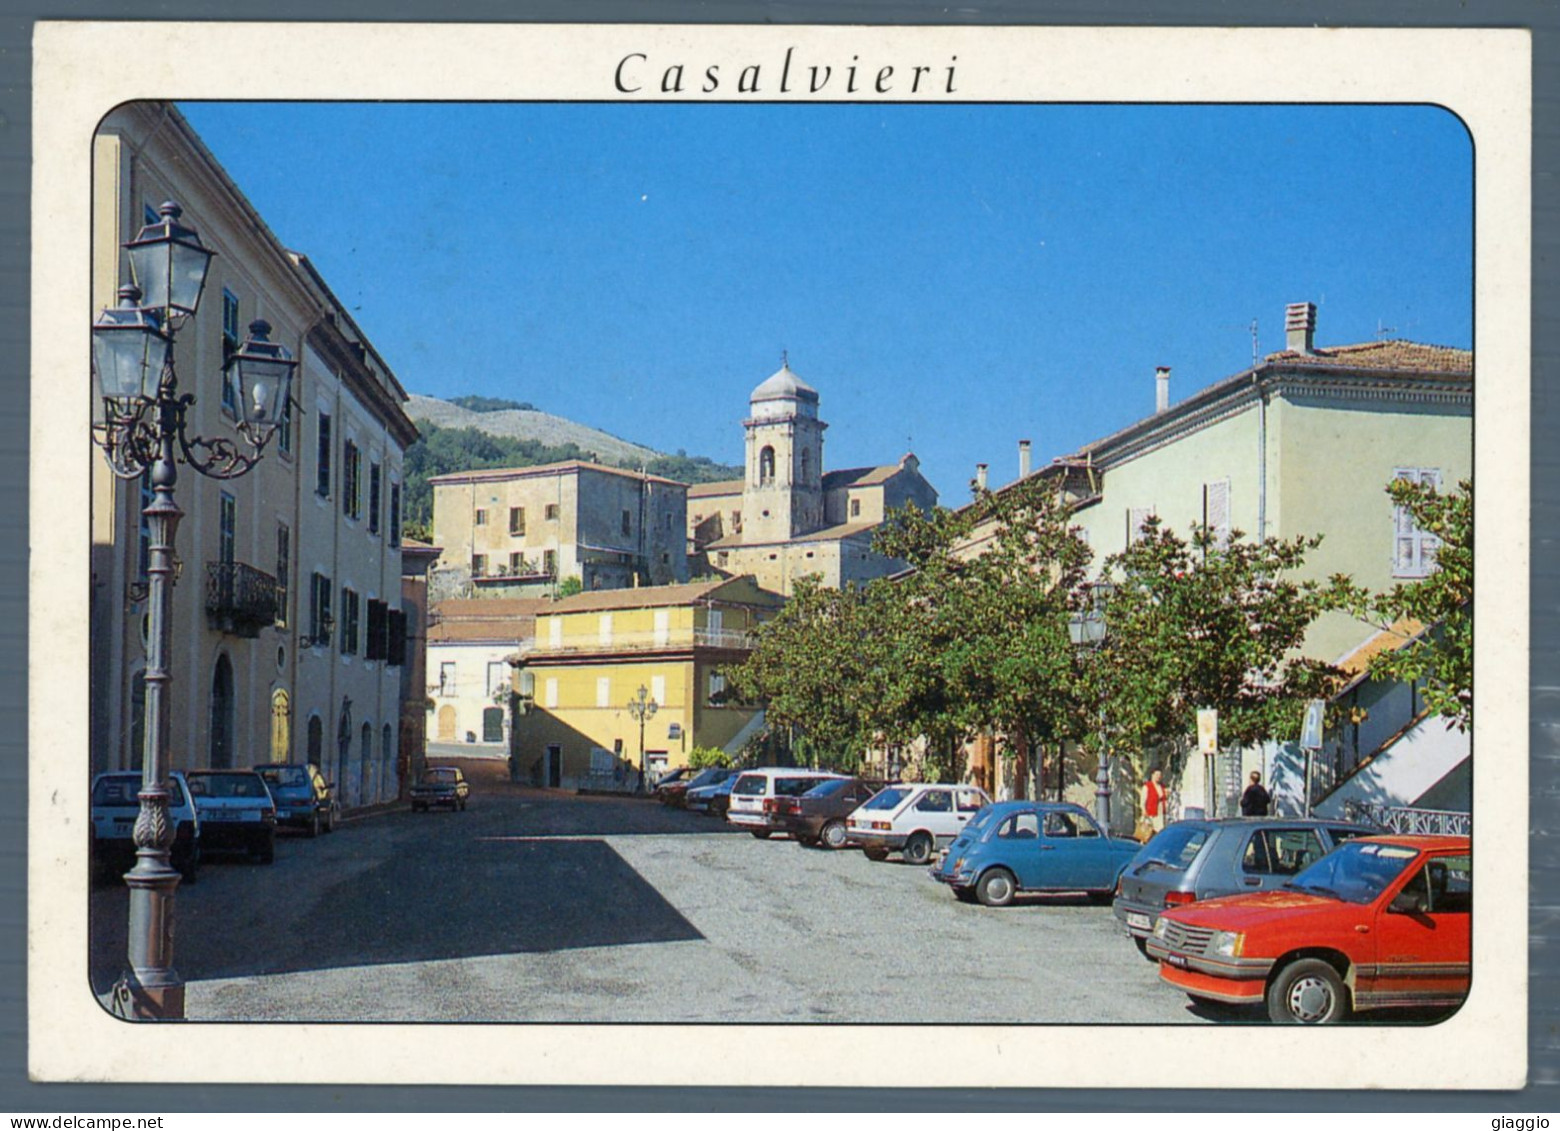 °°° Cartolina - Casalvieri Piazza S. Rocco - Viaggiata °°° - Frosinone